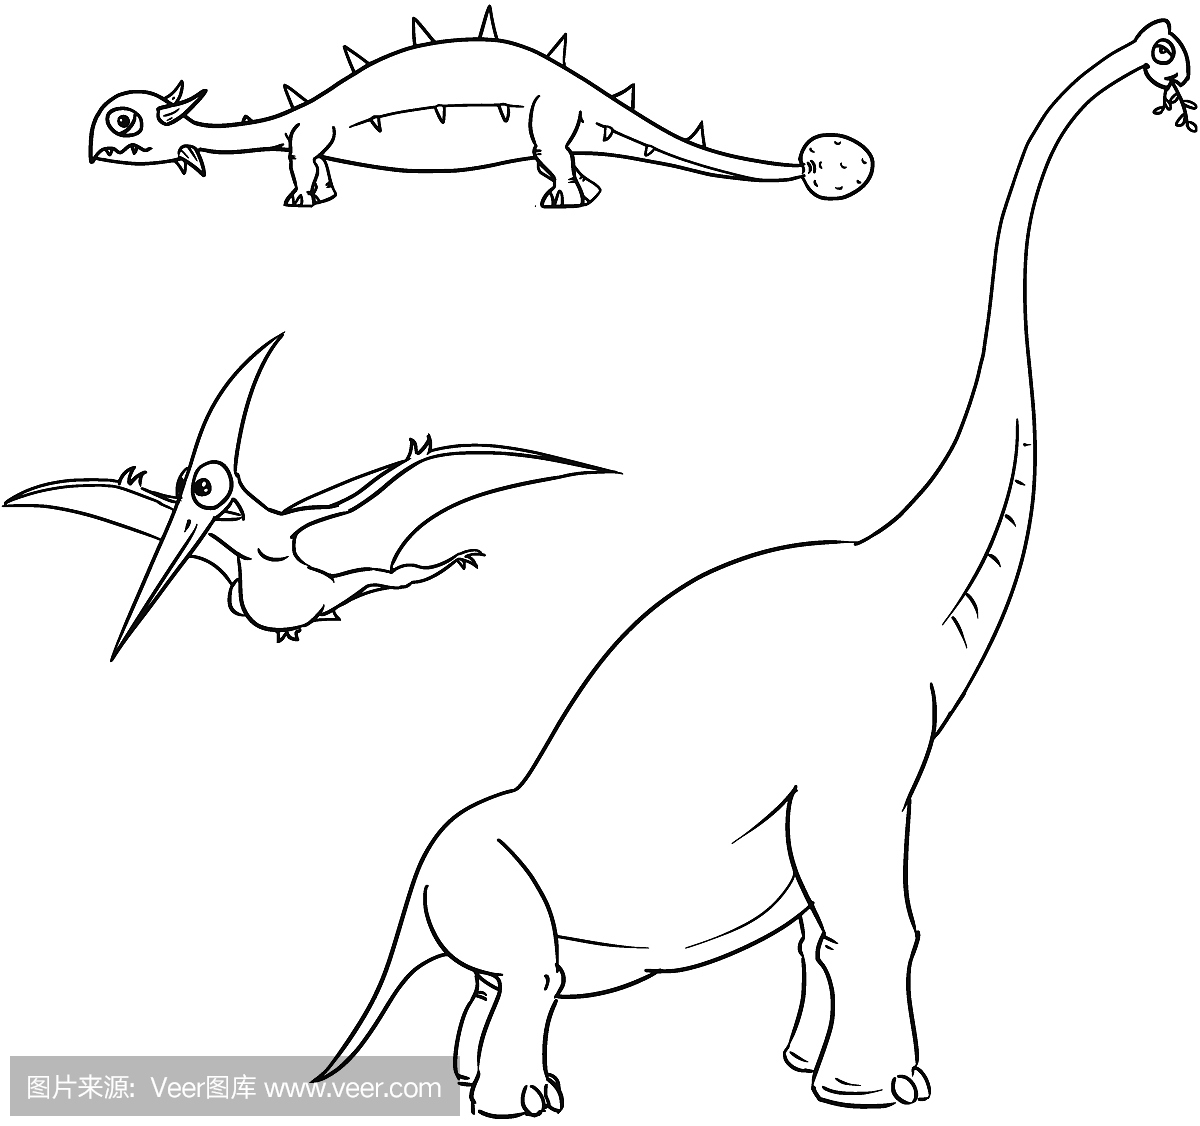 可爱的手绘画图解教程 漂亮彩色简笔画恐龙的画法 咿咿呀呀儿童手工网